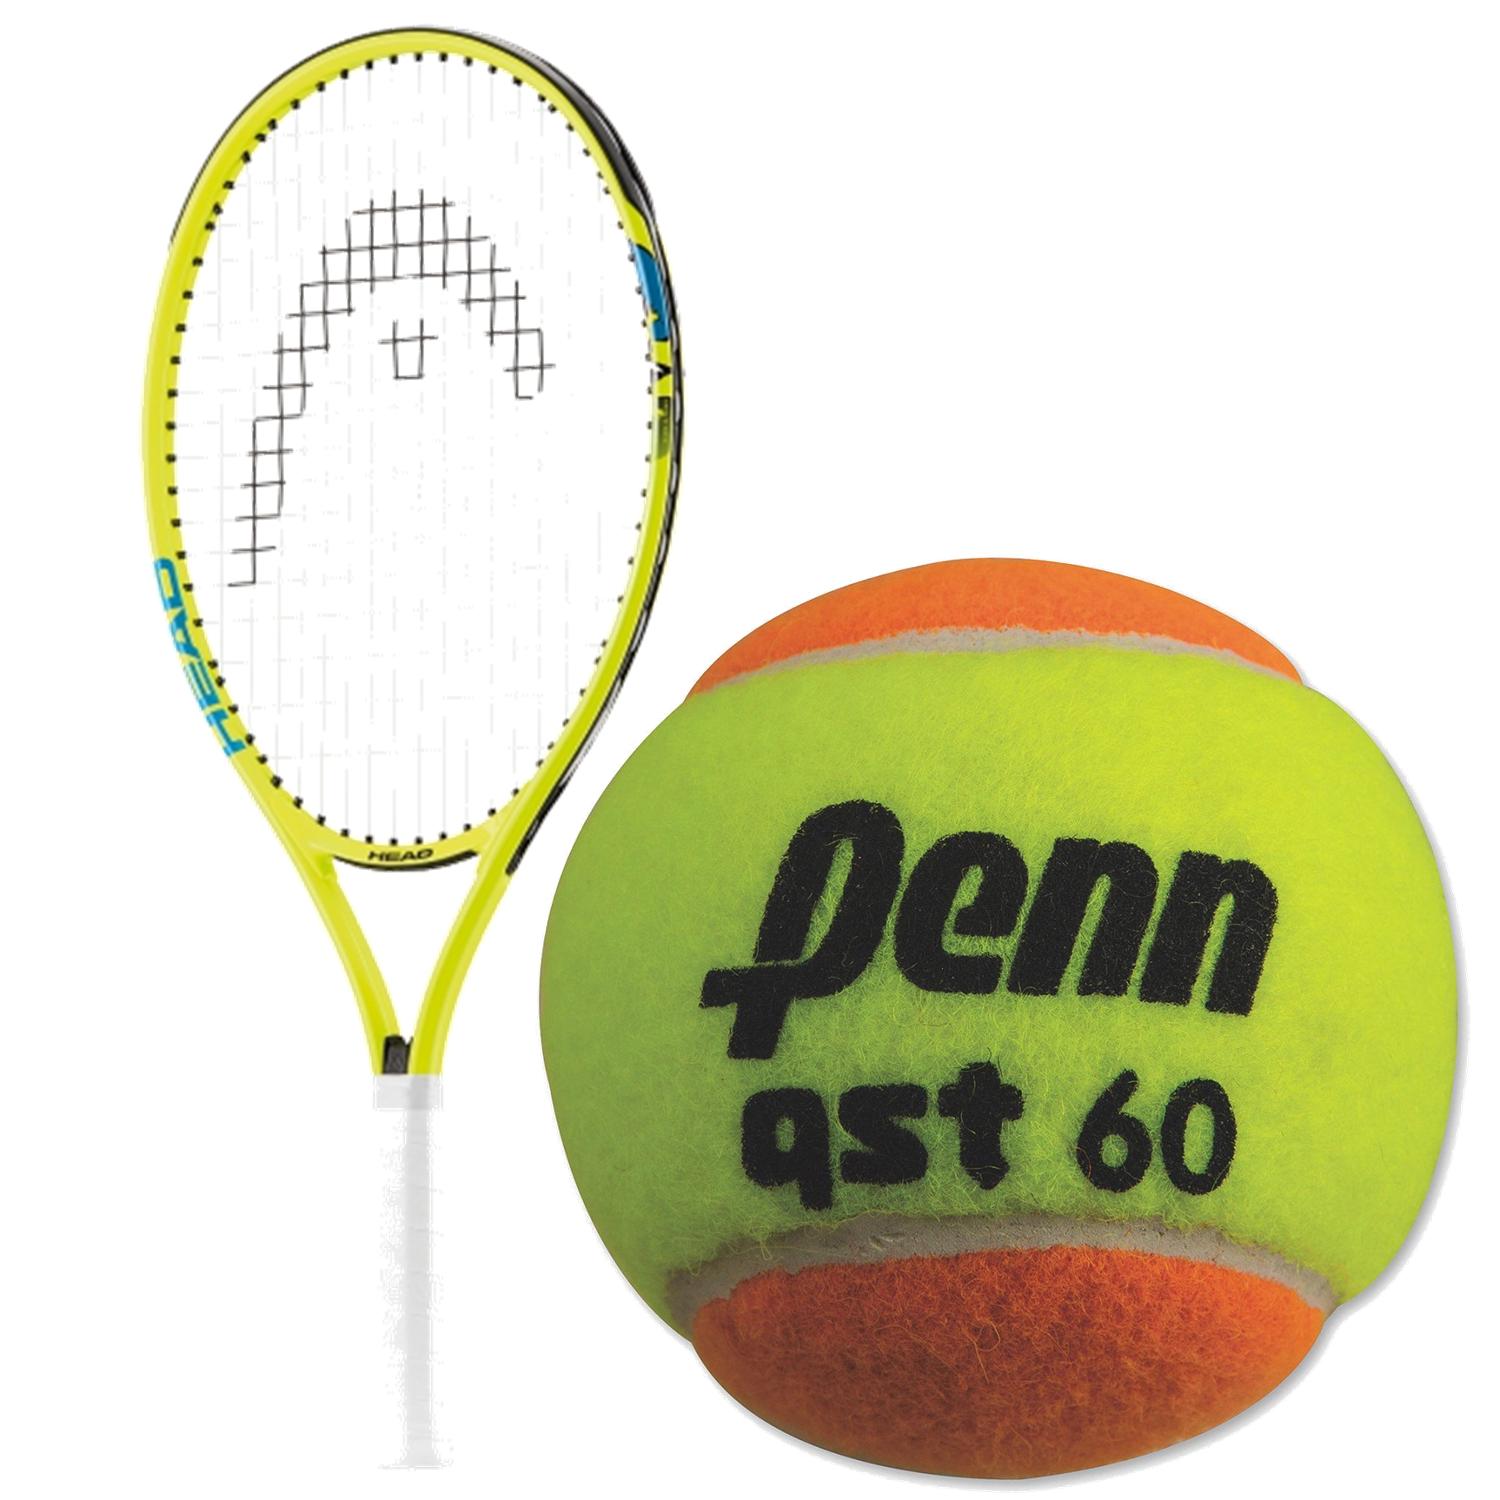 HEAD Speed Junior Tennis Racquet bundled with Penn QST 60 Orange Tennis Balls